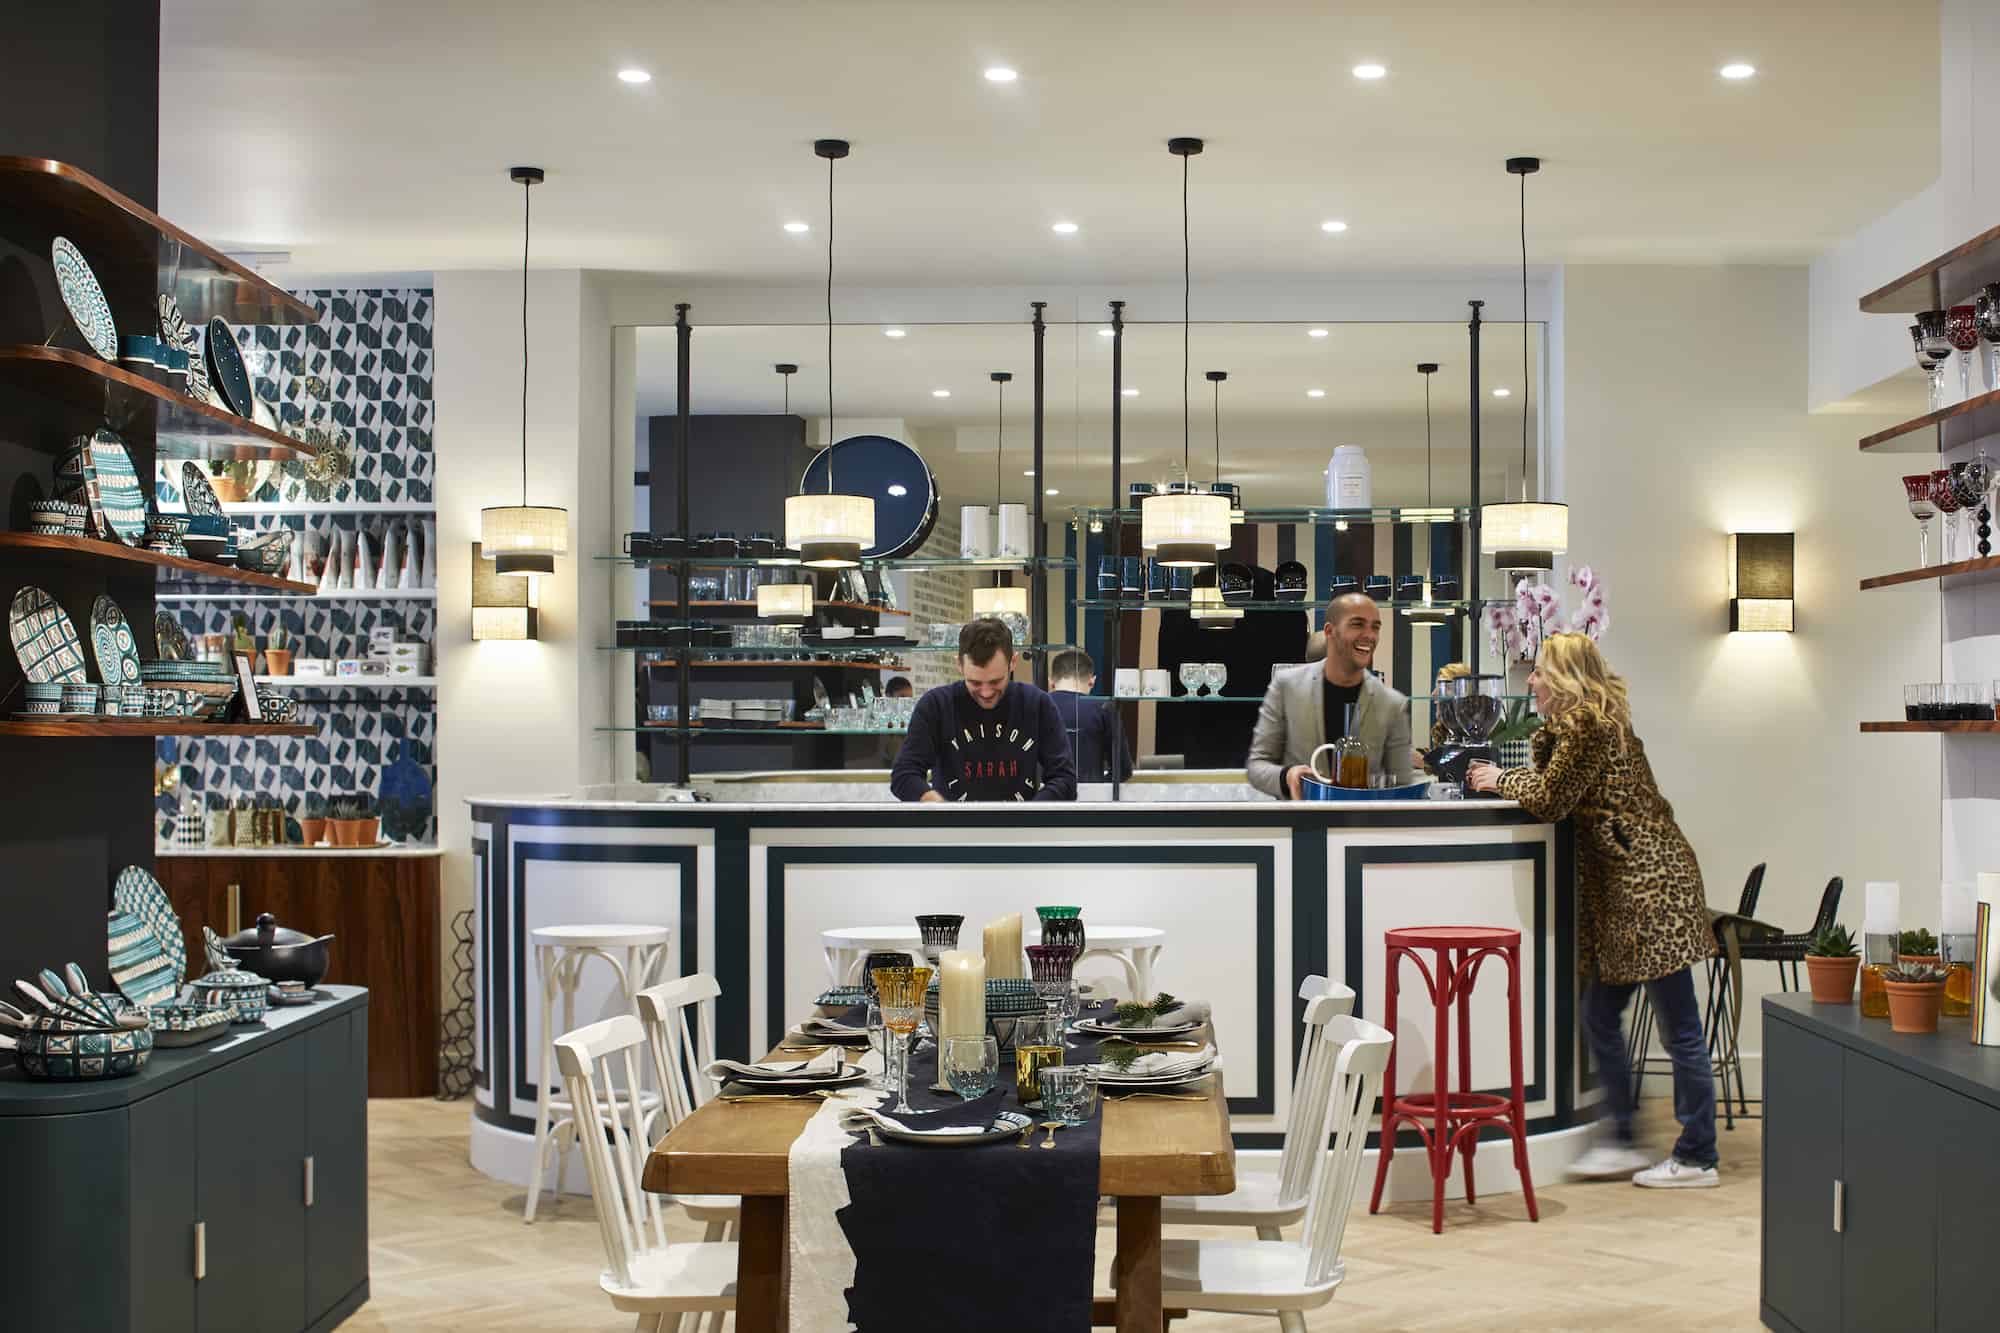 HiP Paris Blog rounds up Paris' best concept store cafes like at Maison Sarah Lavoine, an interior design haven.